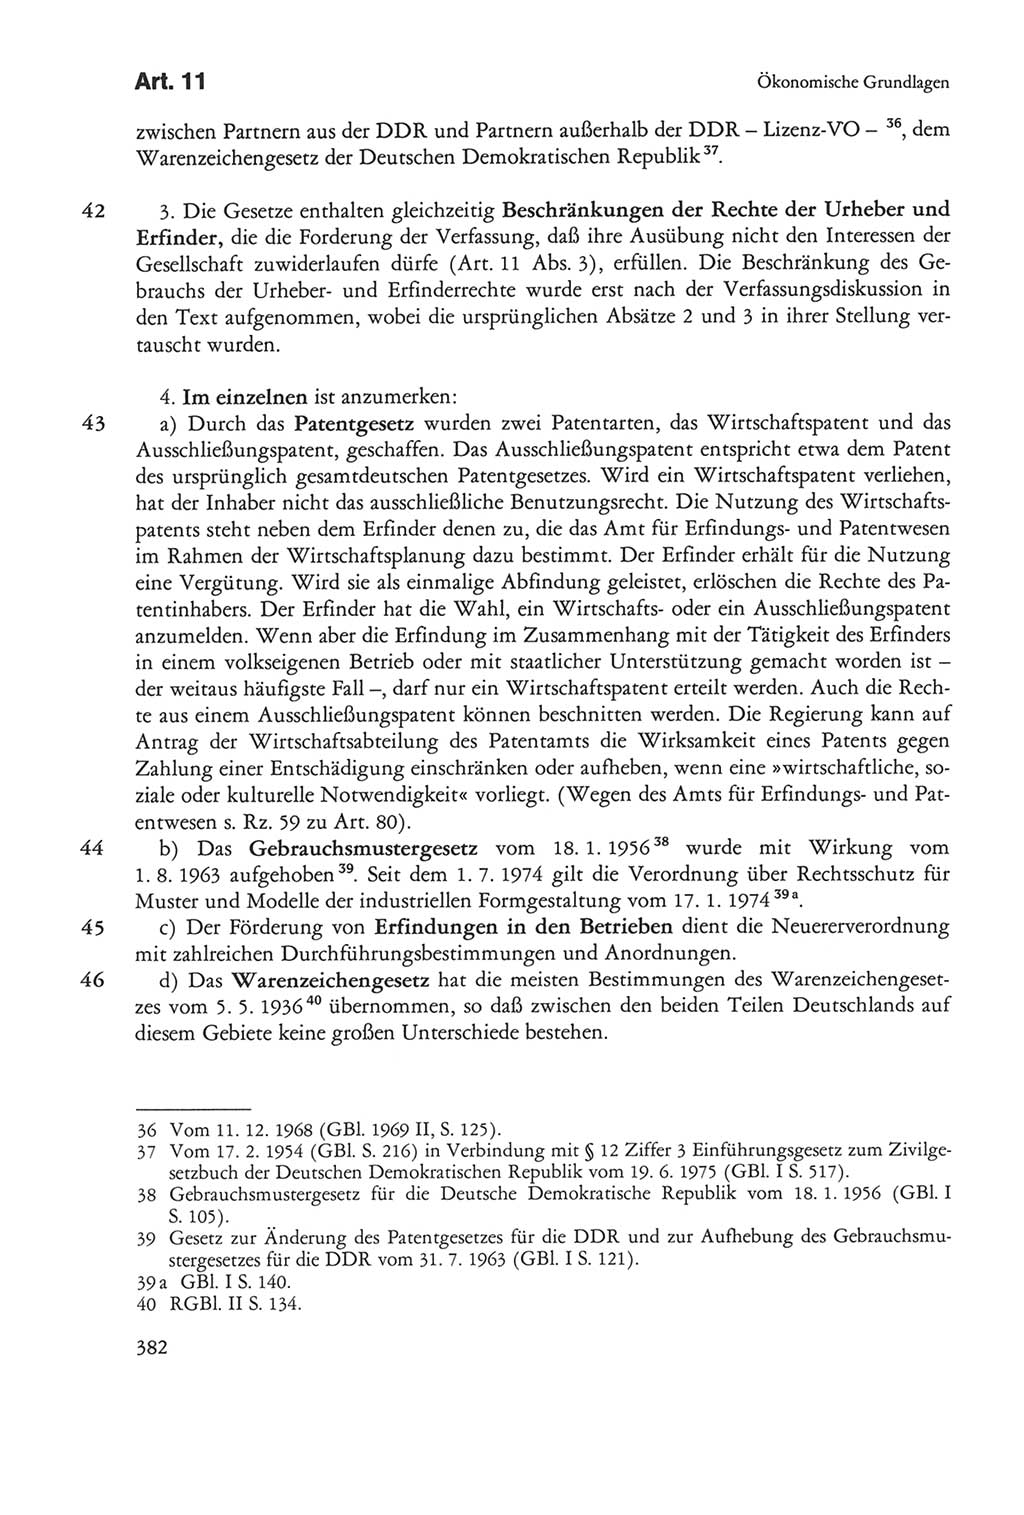 Die sozialistische Verfassung der Deutschen Demokratischen Republik (DDR), Kommentar mit einem Nachtrag 1997, Seite 382 (Soz. Verf. DDR Komm. Nachtr. 1997, S. 382)